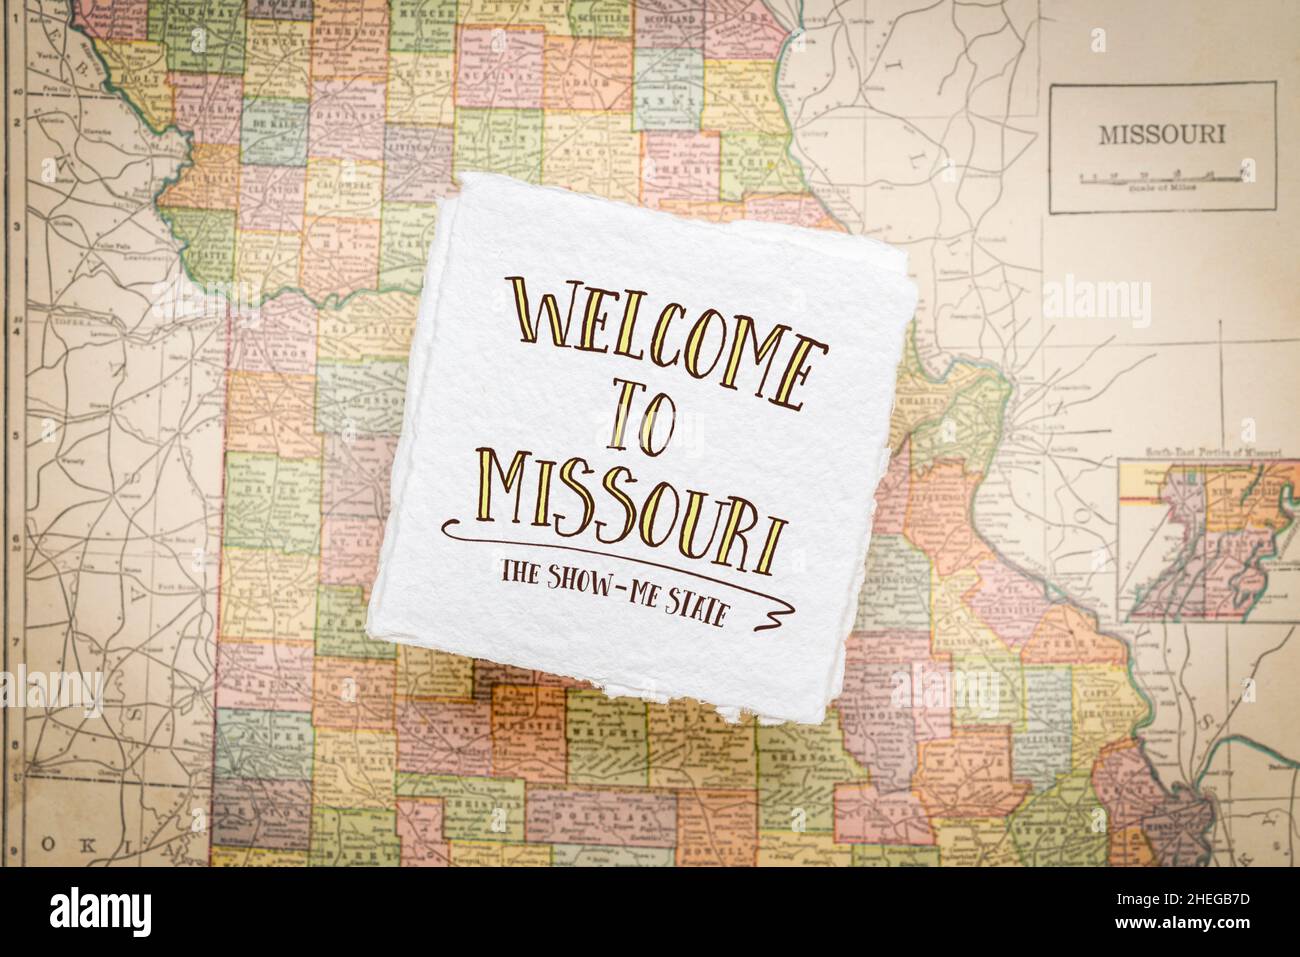 Willkommen in Missouri, dem Show-me-Staat - Handschrift auf einem quadratischen Blatt aus grobem, handgefertigtem Papier, das über einer Vintage-Unschärfe-Karte von Missouri schwebt Stockfoto